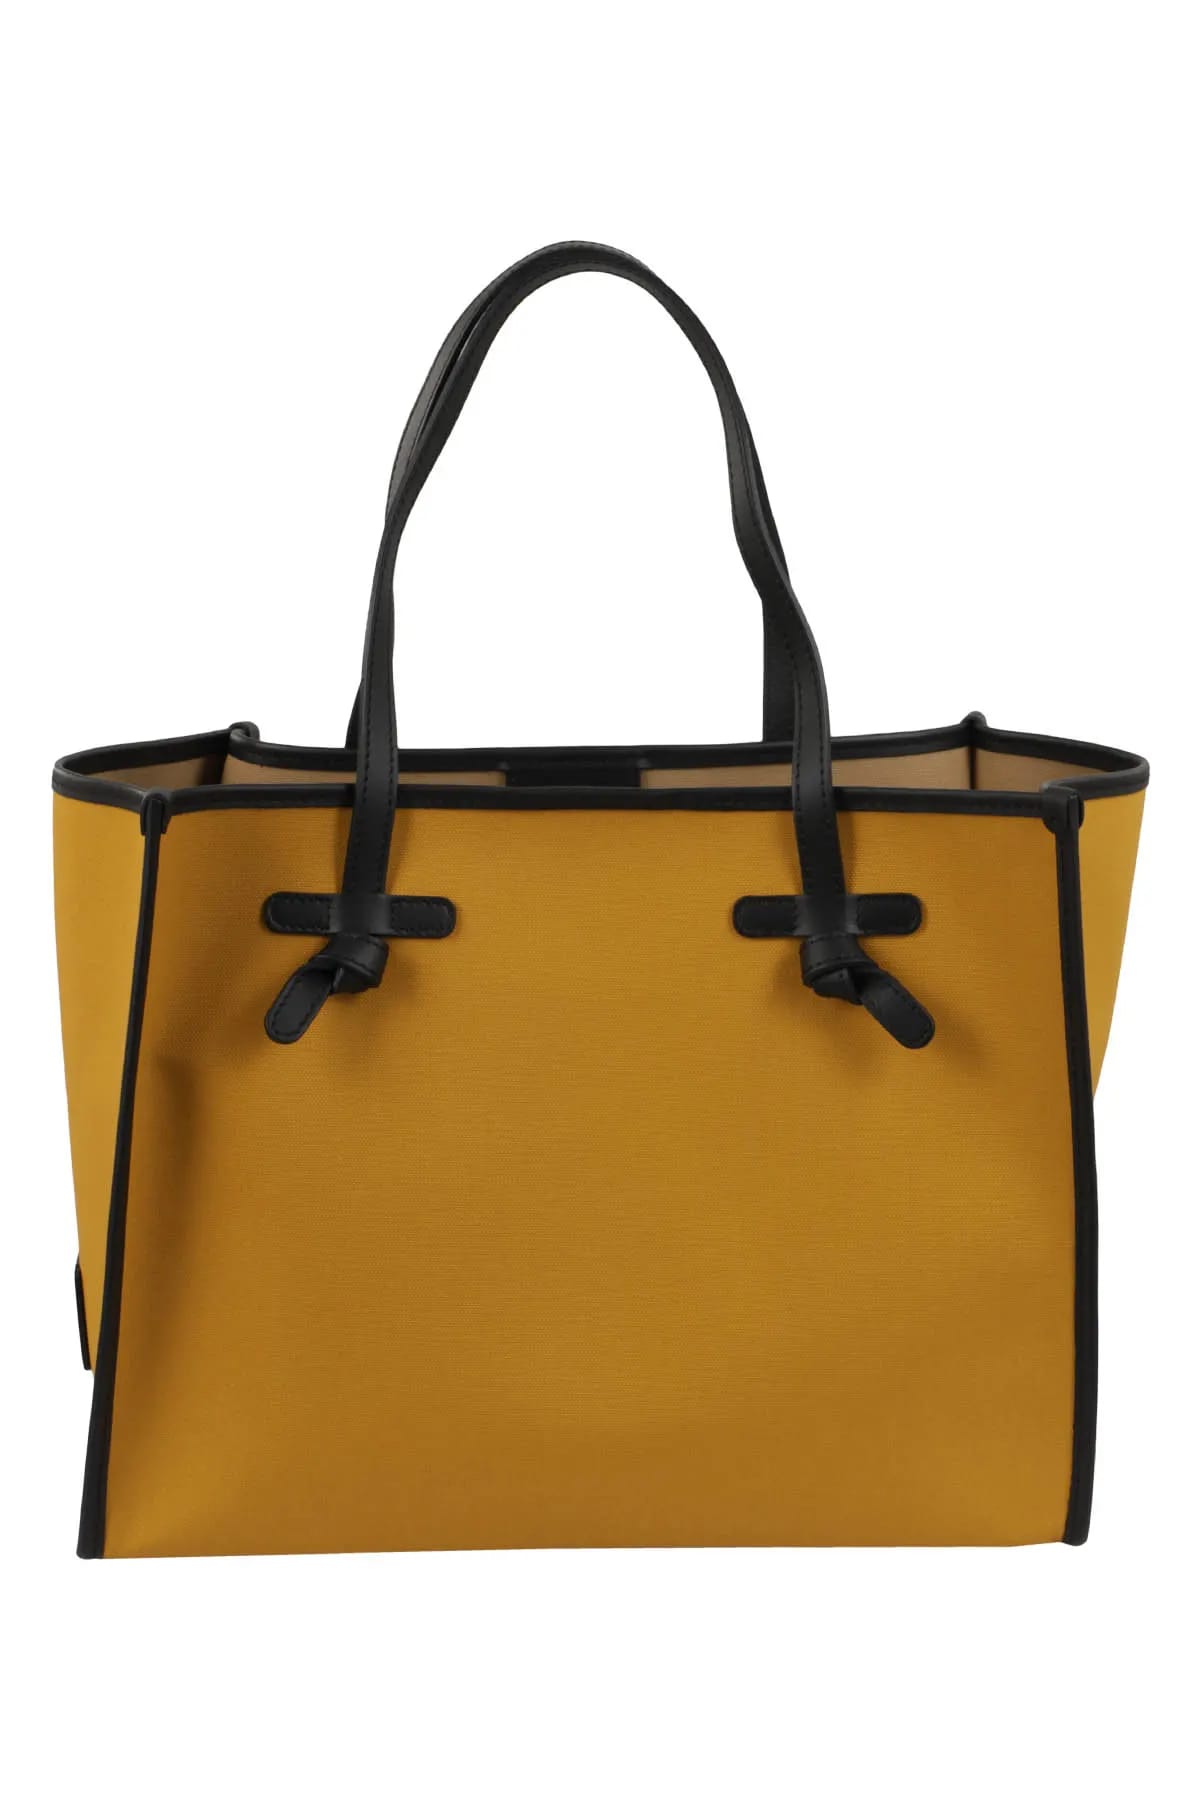 Gianni Chiarini Marcella Original Shopper Bag